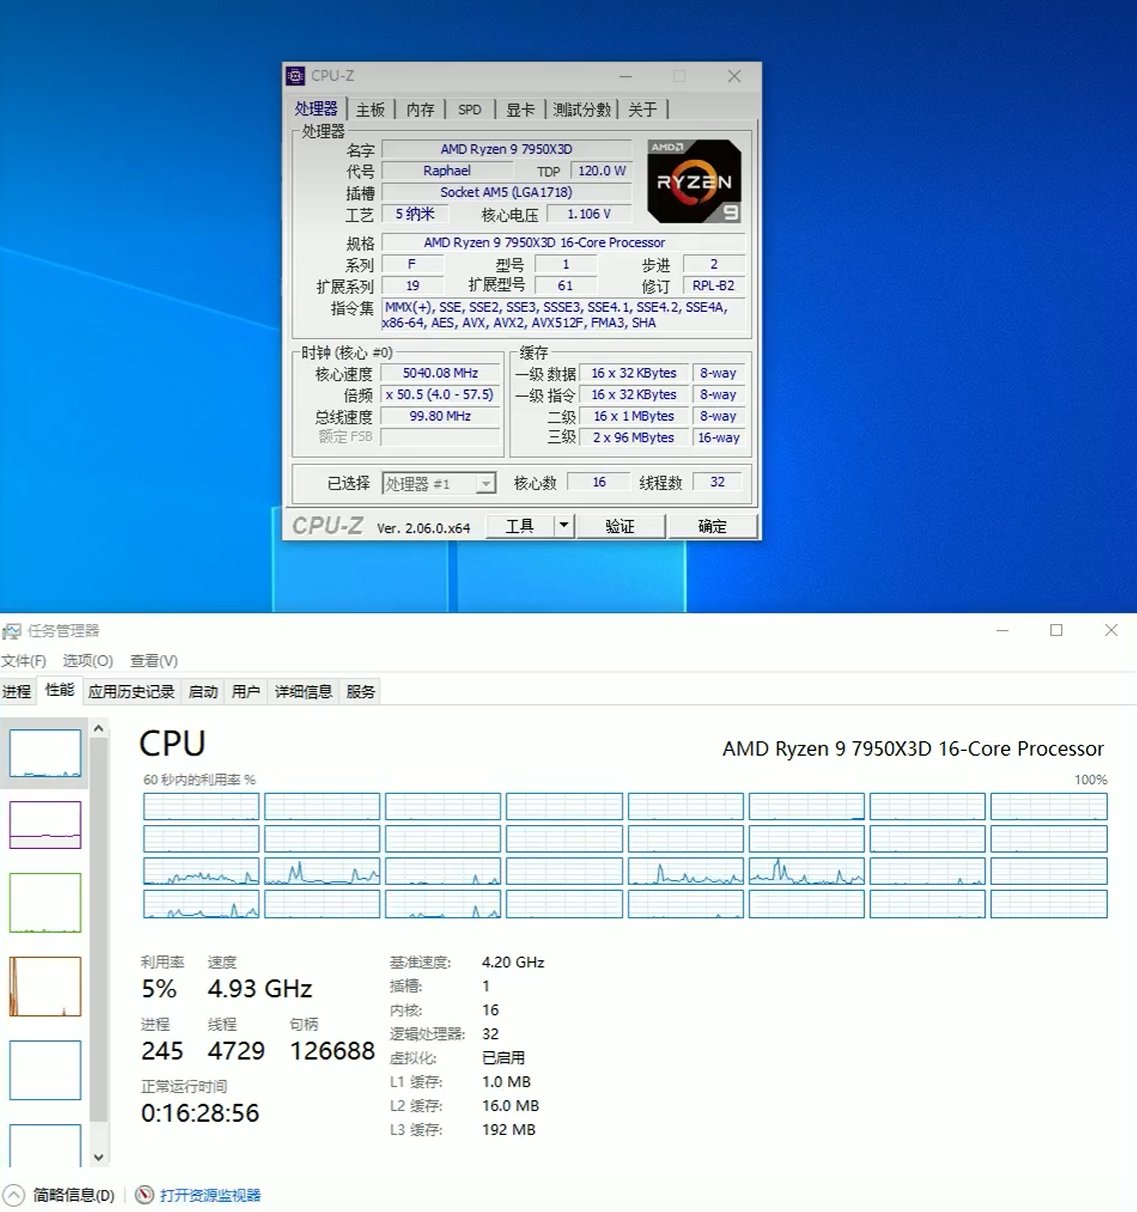 گزارش Windows Task Manager و CPU-Z در مورد CPU AMD Ryzen 9 7950X3D